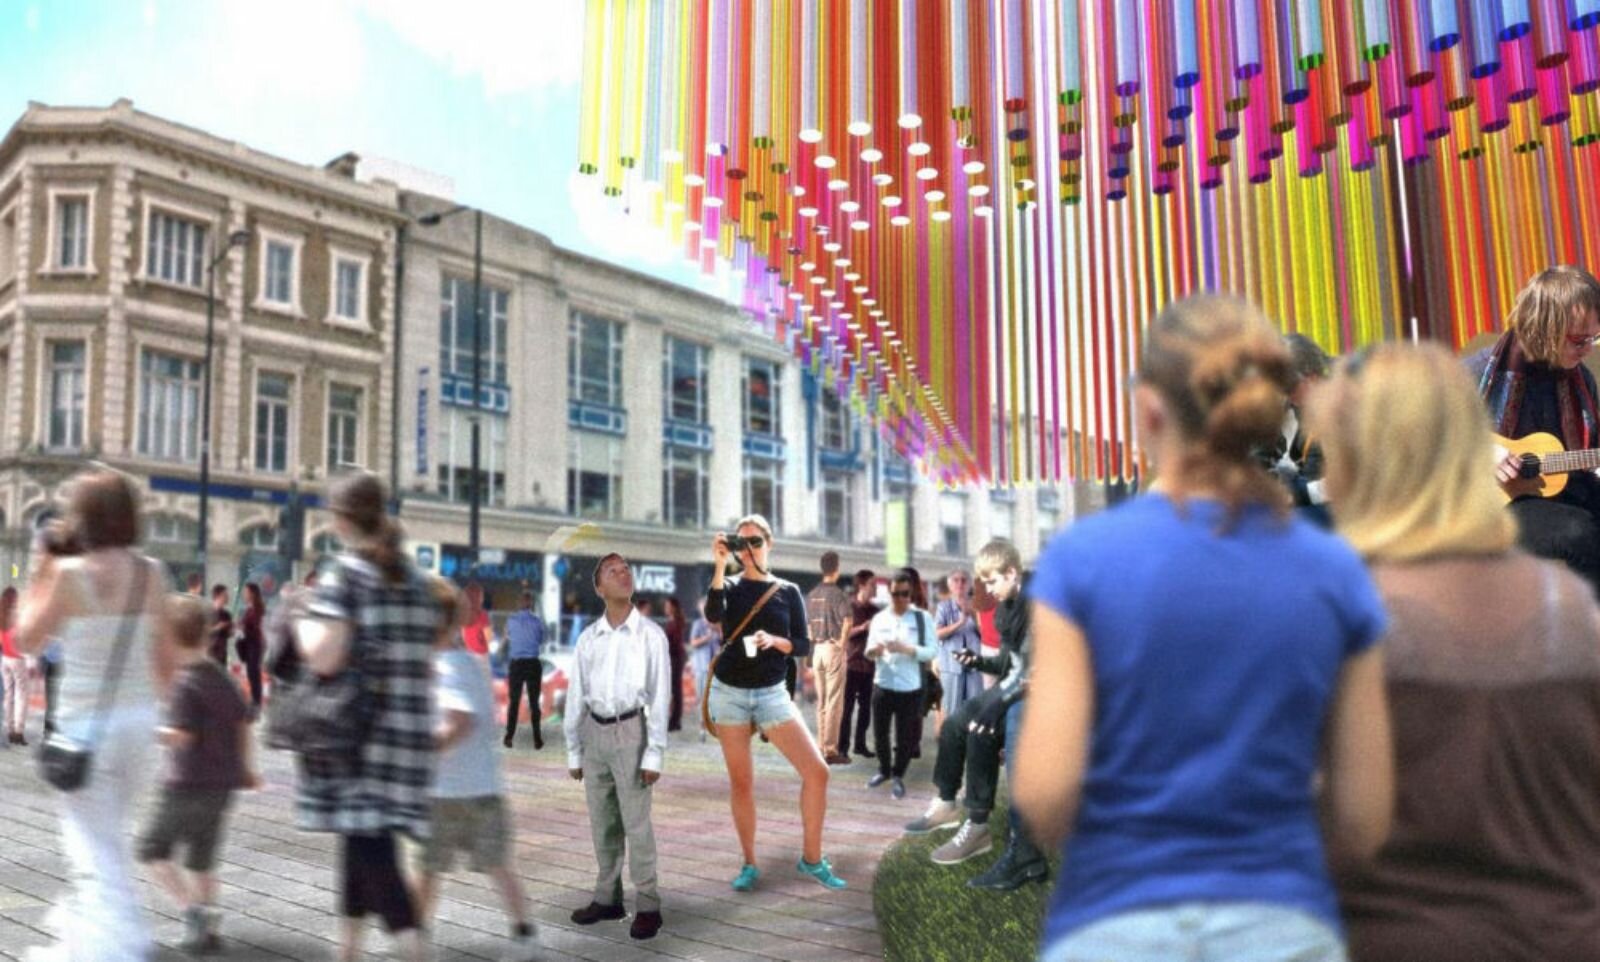 KSR-Architects-design-pavilion-for-Camden-Create-Festival-2014-011.jpg